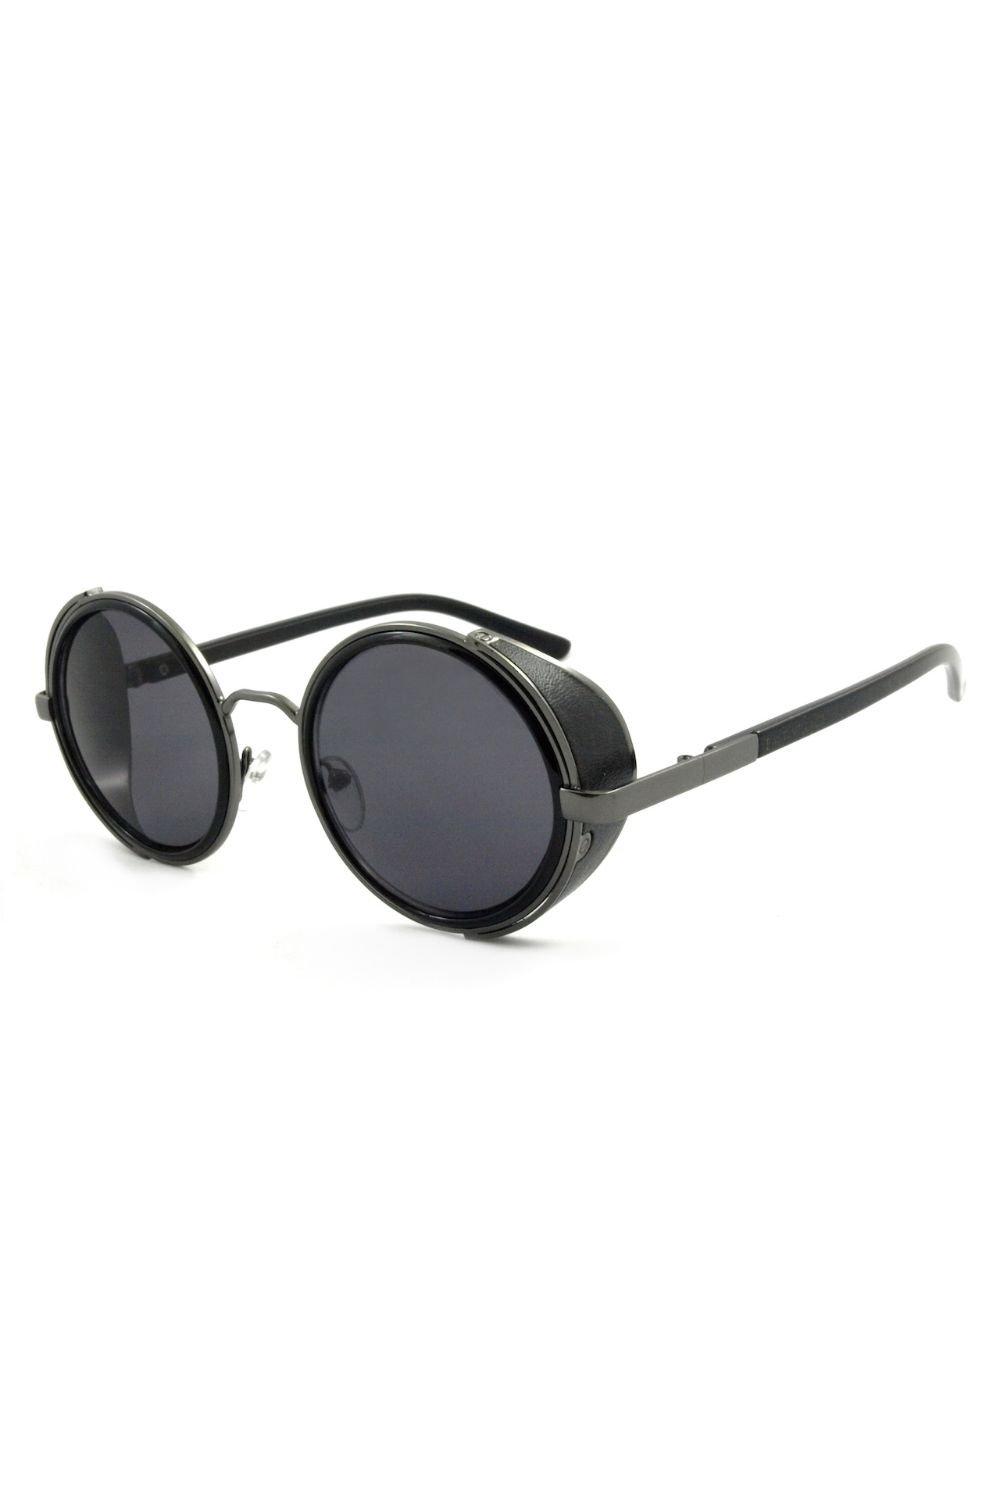 sawasdee village Круглые солнцезащитные очки Freeman East Village, черный